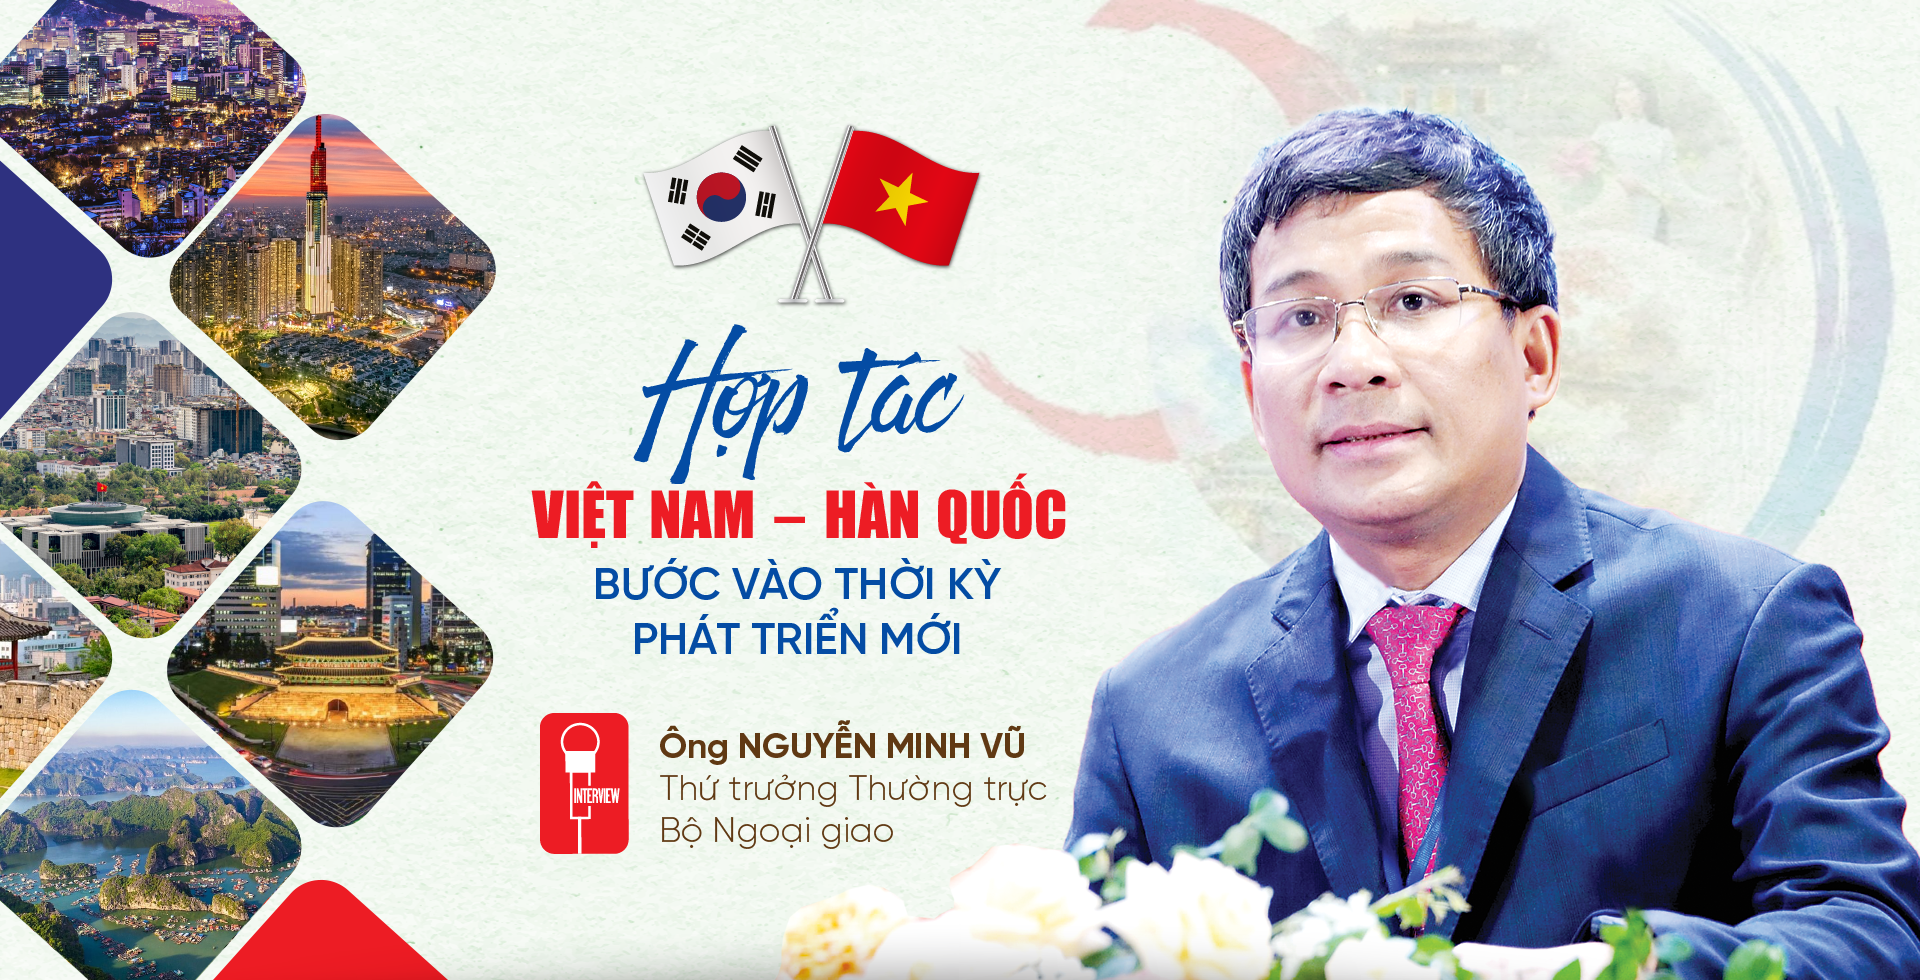 Hợp tác Việt Nam – Hàn Quốc bước vào thời kỳ phát triển mới - Ảnh 1